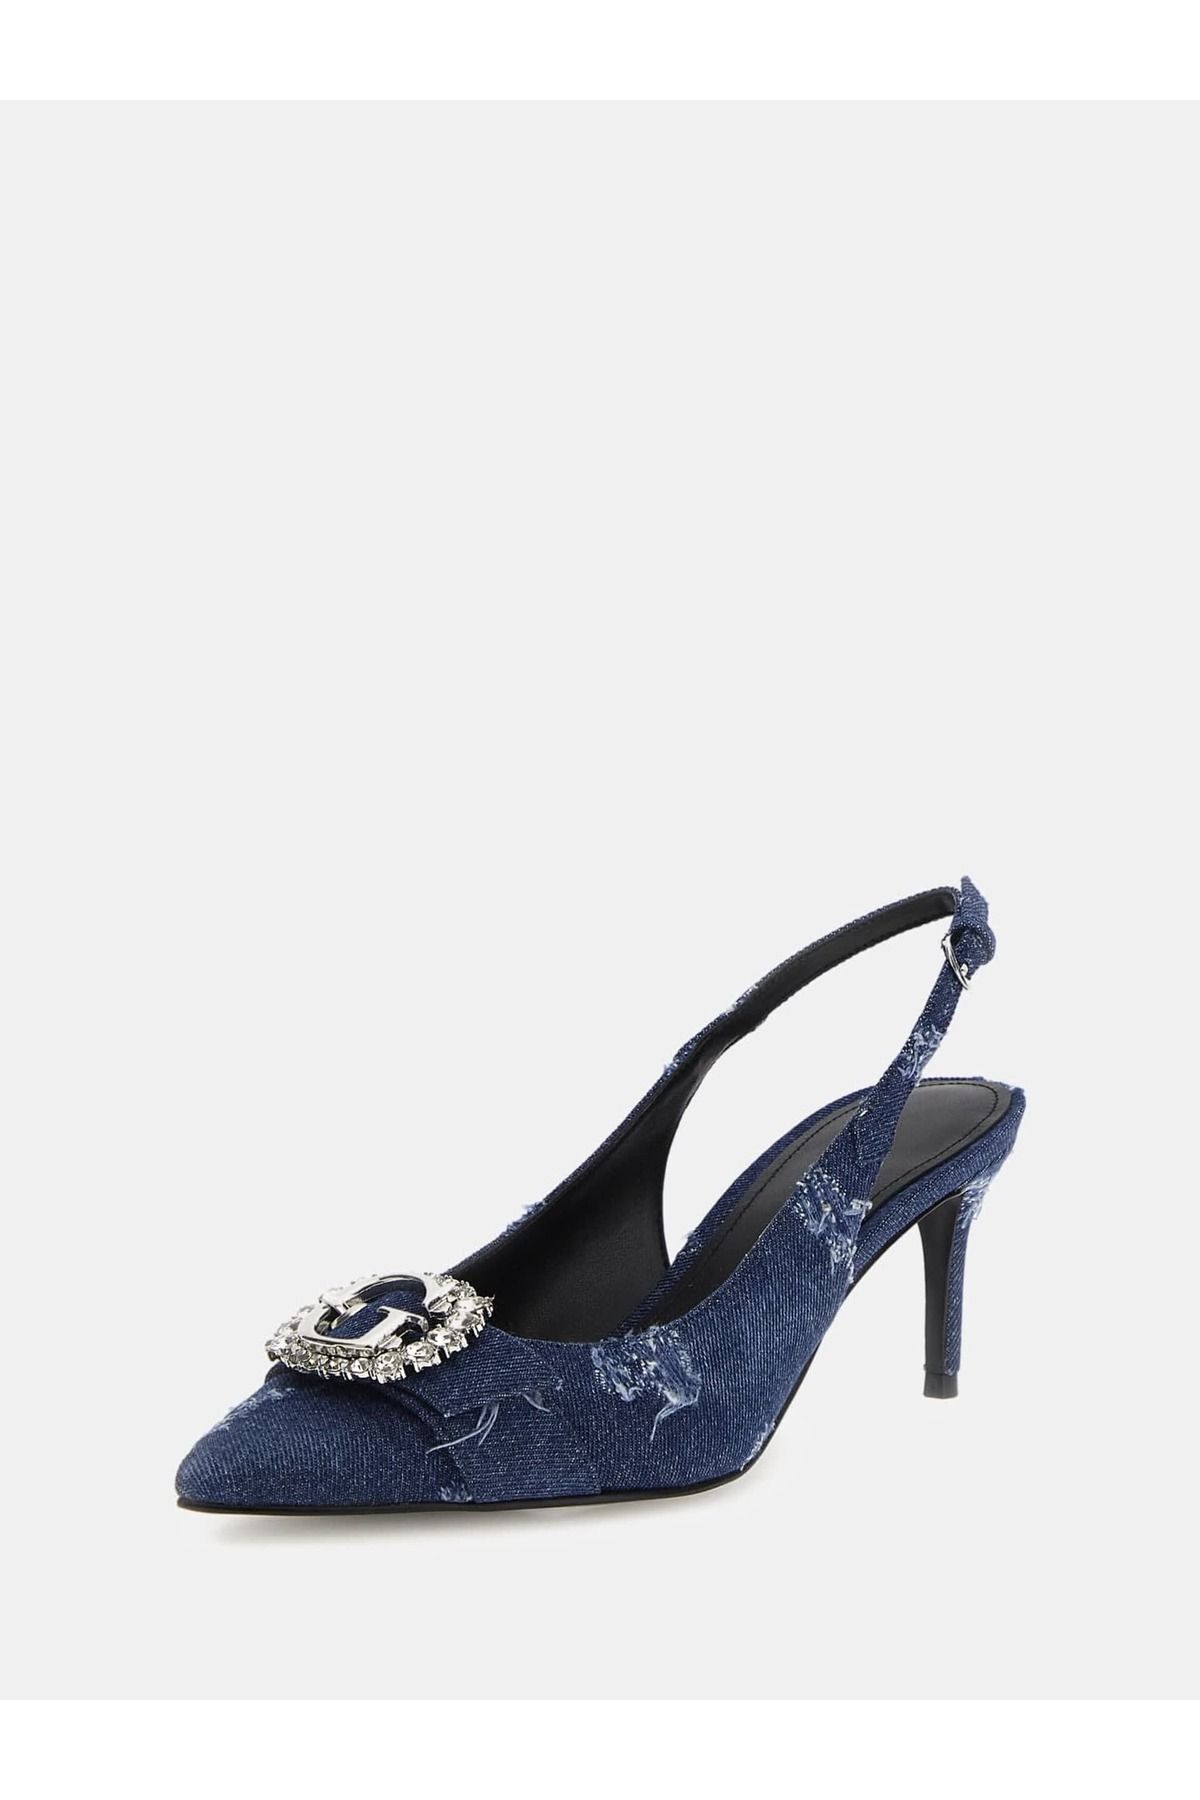 Guess Kadın Logo Detaylı Metal Tokalı Ayarlanabilir Mavi Klasik Topuklu Ayakkabı FLJBRA DEN05-BLUE